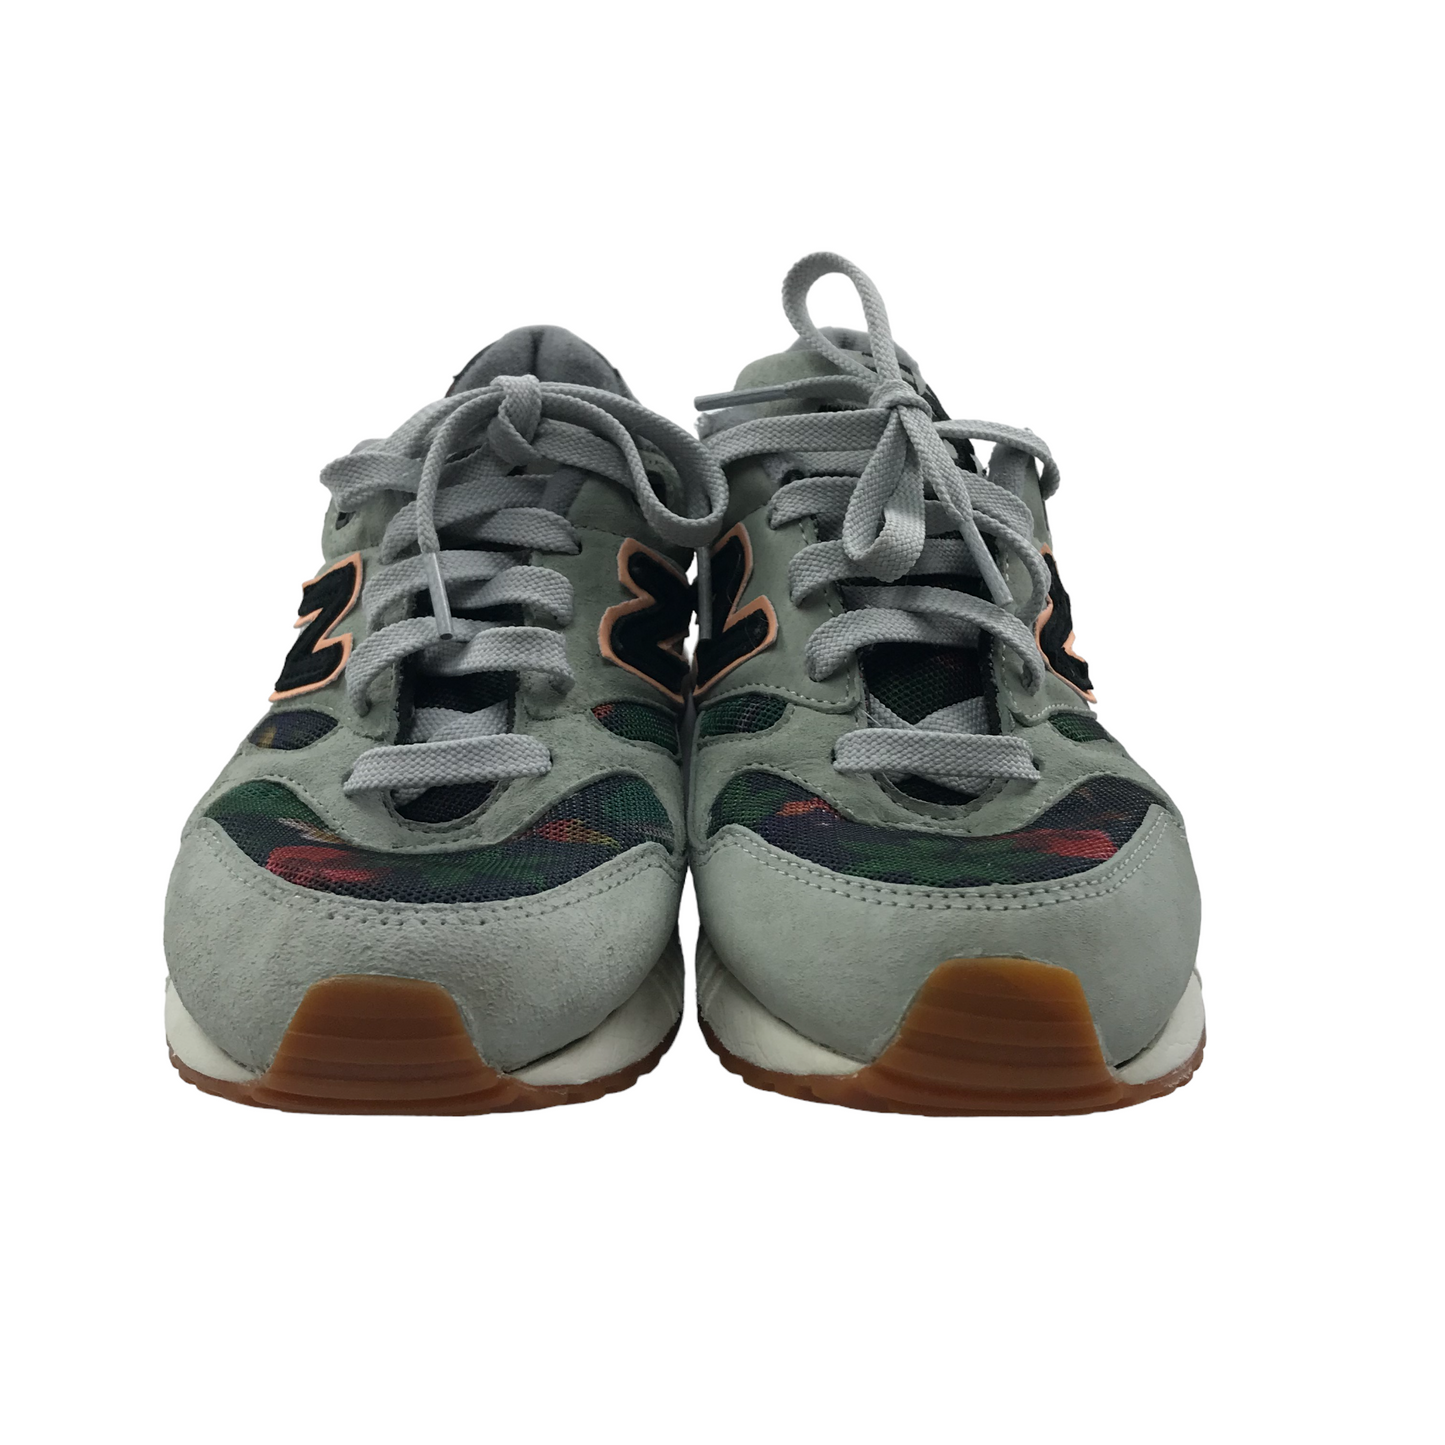 New Balance 530 Encap Grey Floral Trainers Shoe Size 5